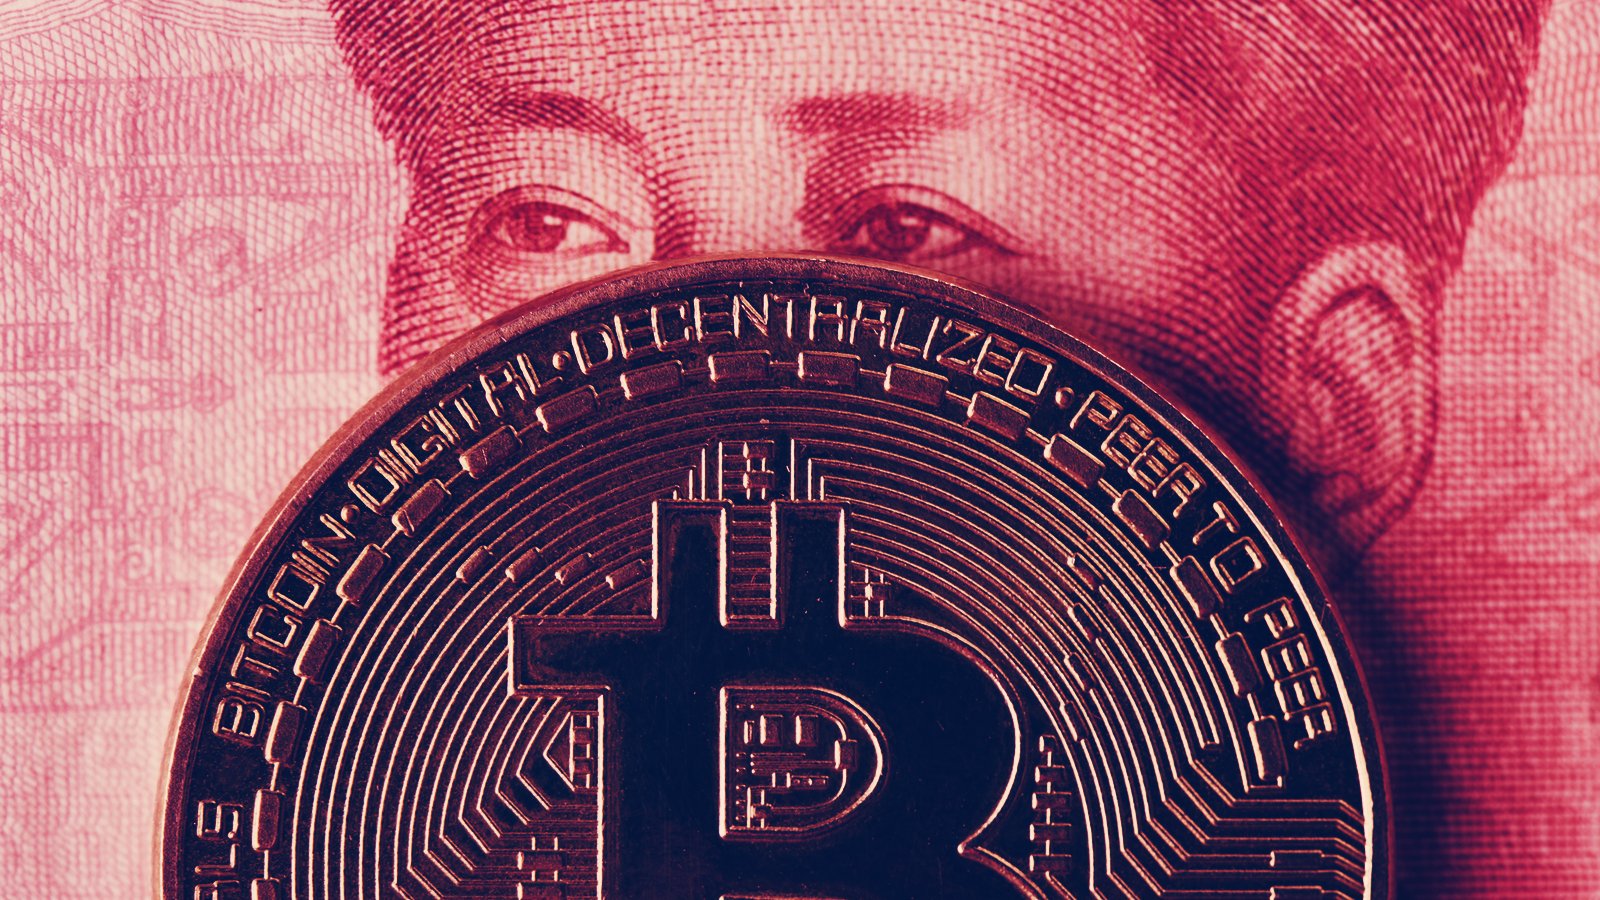 Hồi tháng 5/2021, chính quyền Trung Quốc ra lệnh trấn áp hoạt động đào Bitcoin trên toàn quốc. Ngay sau đó, các cơ sở đào Bitcoin tại Nội Mông đồng loạt đóng cửa. Ảnh: @AFP.